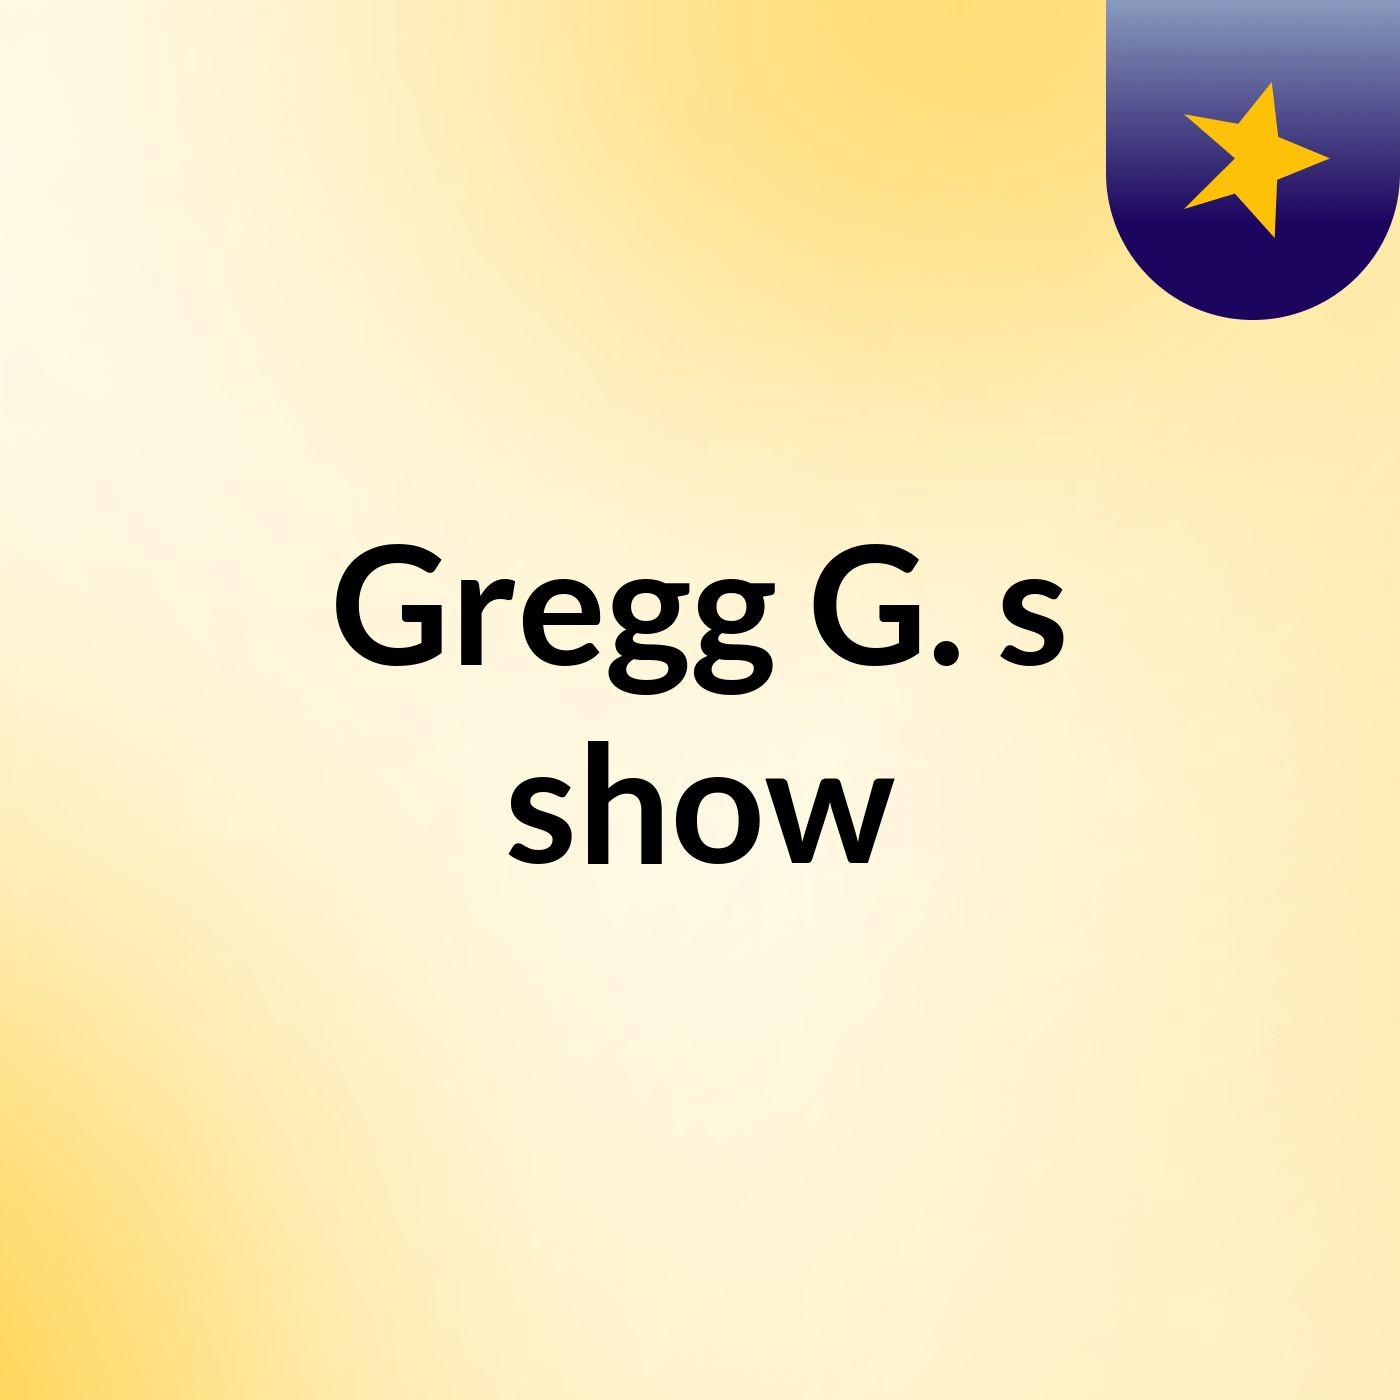 Gregg G.'s show